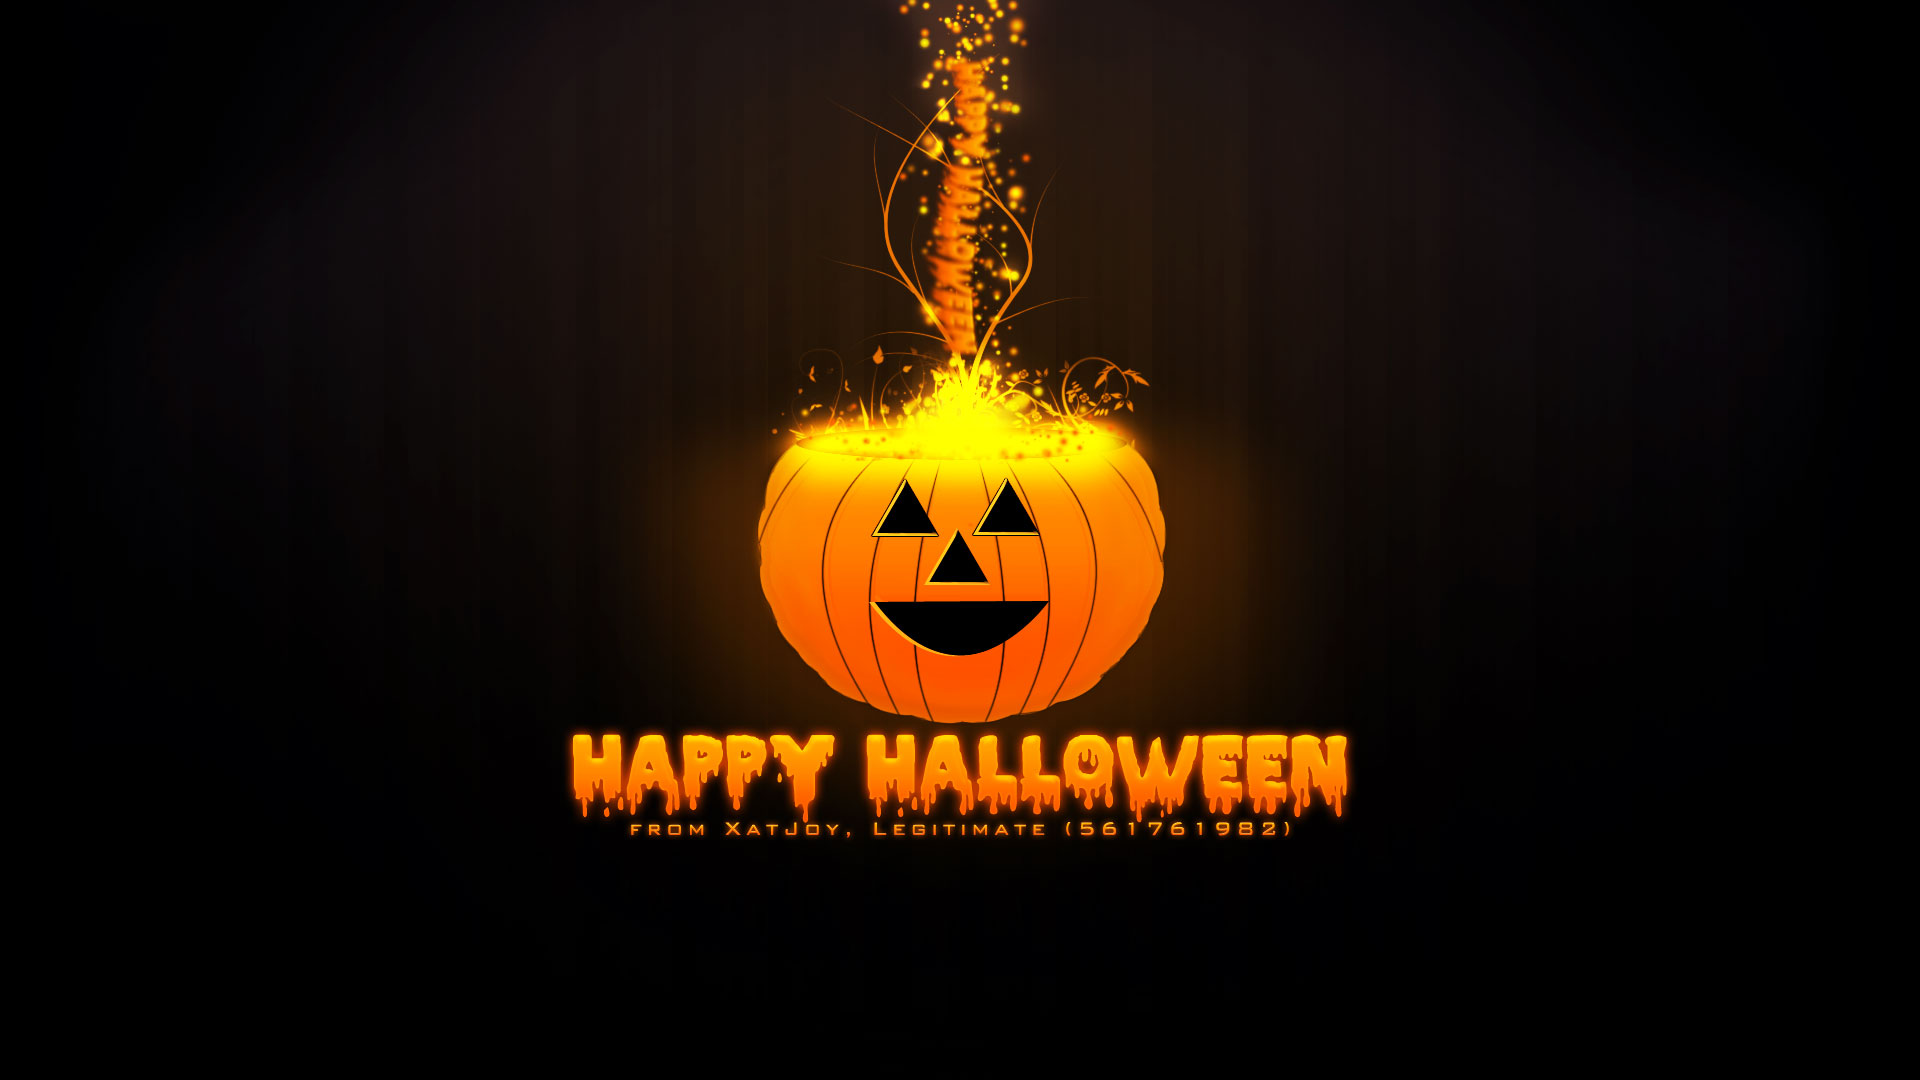 Free download Halloween Backgrounds | PixelsTalk.Net